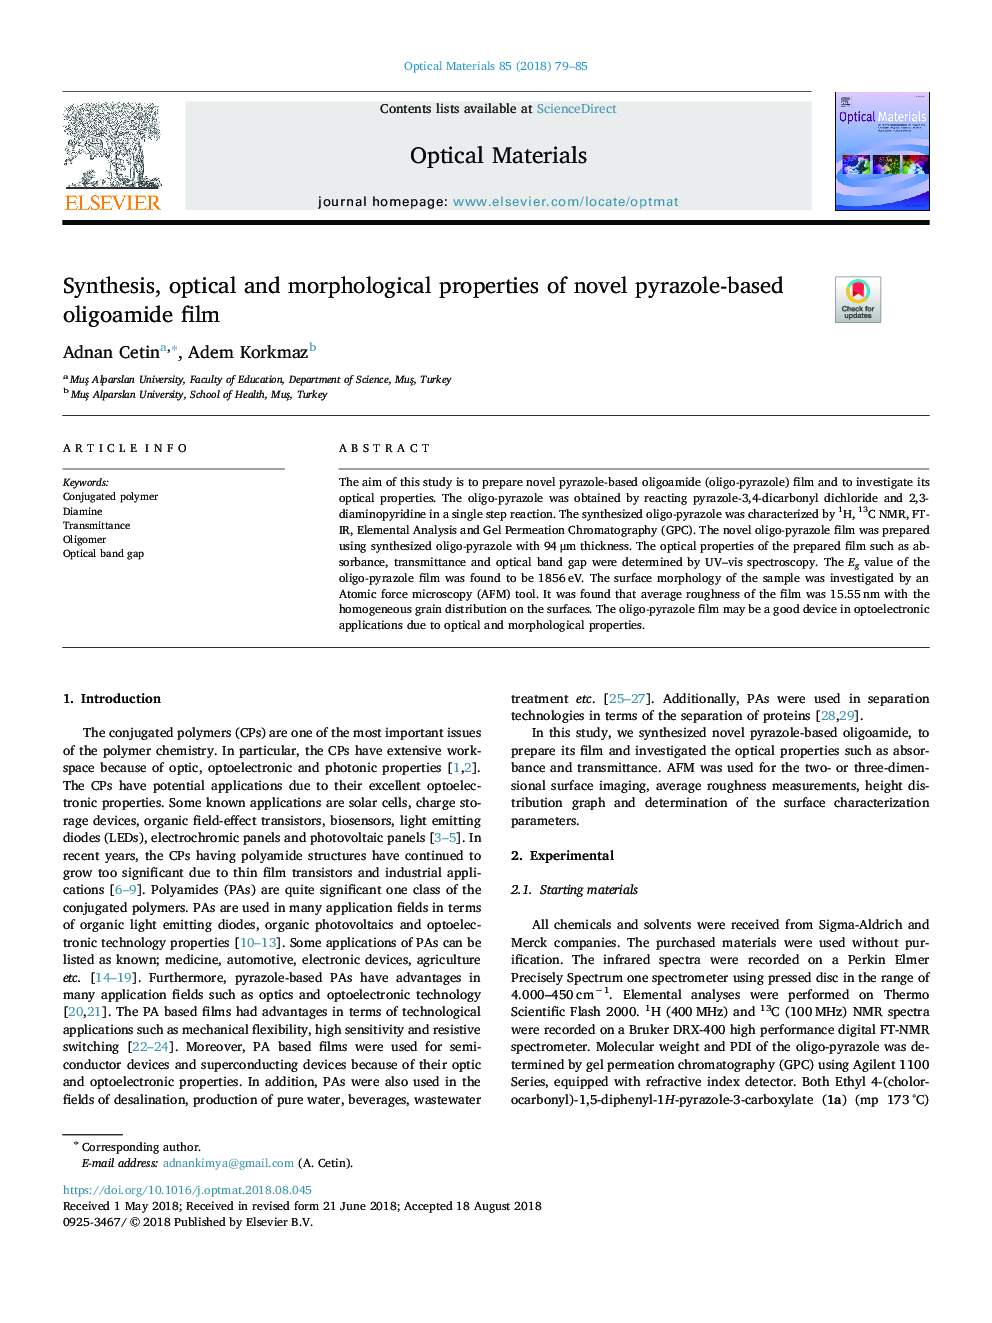 Synthesis, optical and morphological properties of novel pyrazole-based oligoamide film